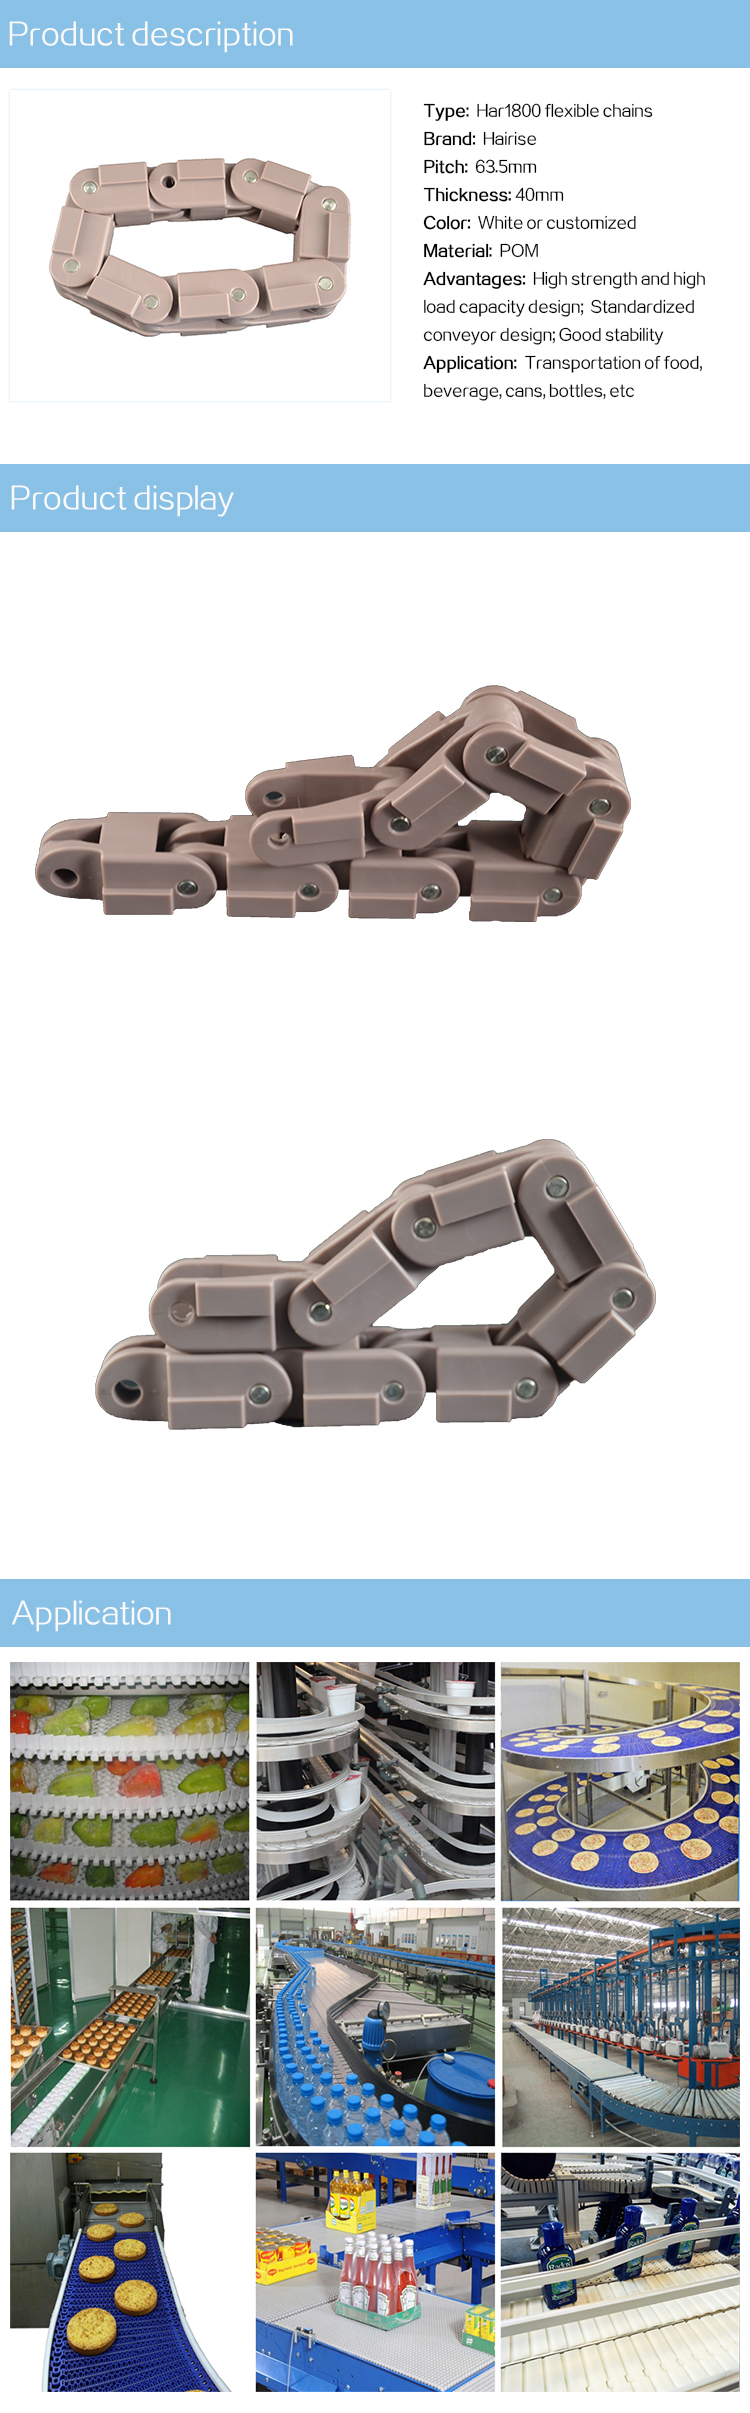 Har1800 series flexible chains.jpg